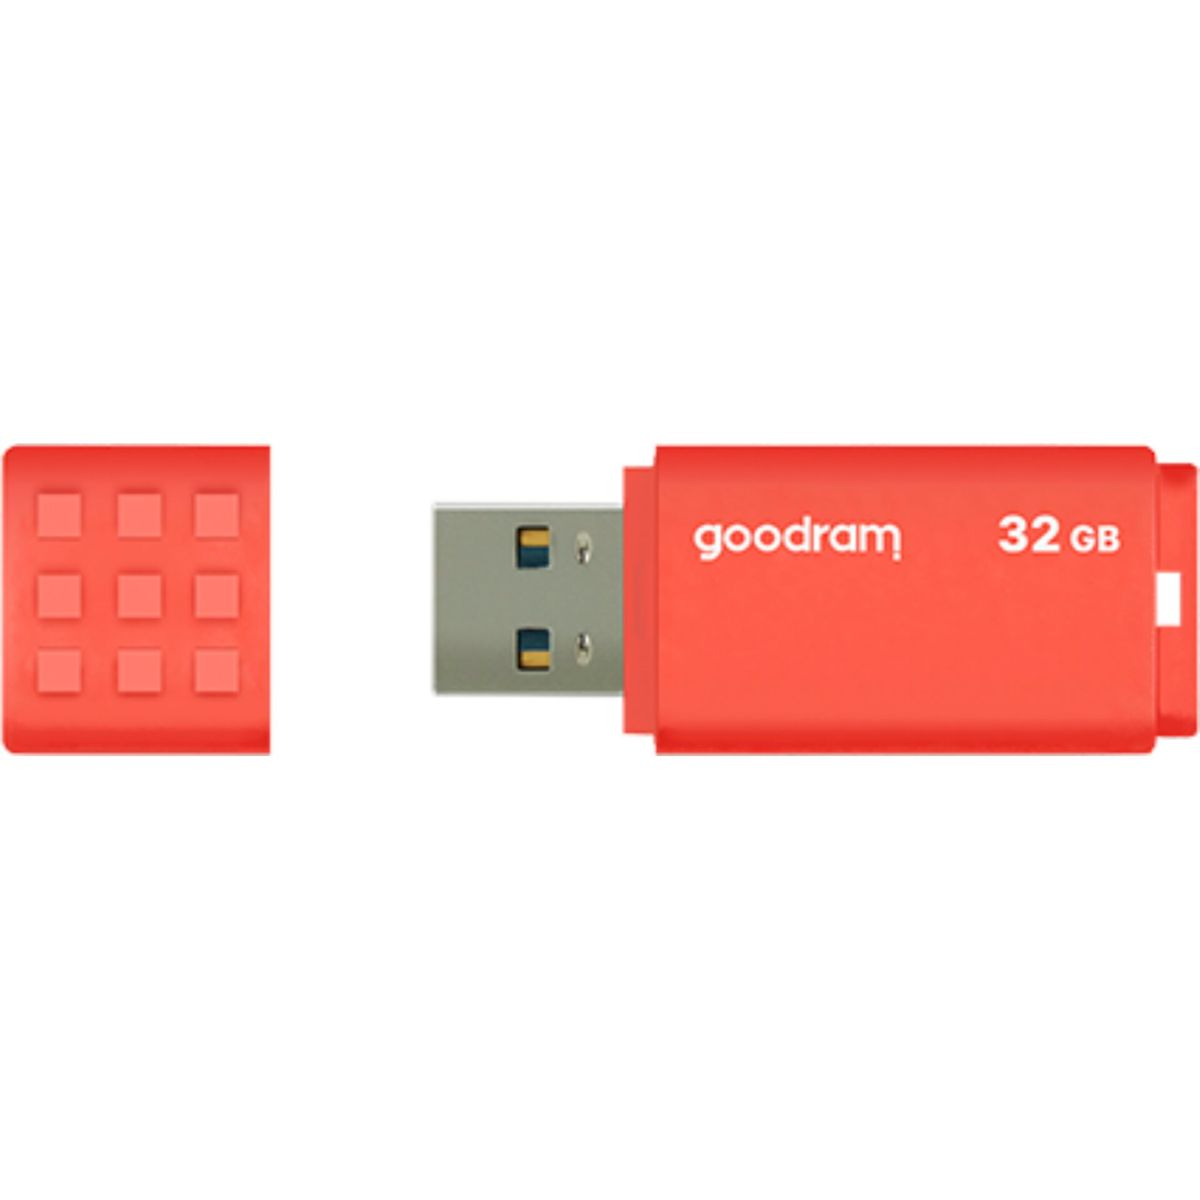 GOODRAM UME3 32 3.0 Orange GB) USB 32GB Stick (orange, USB